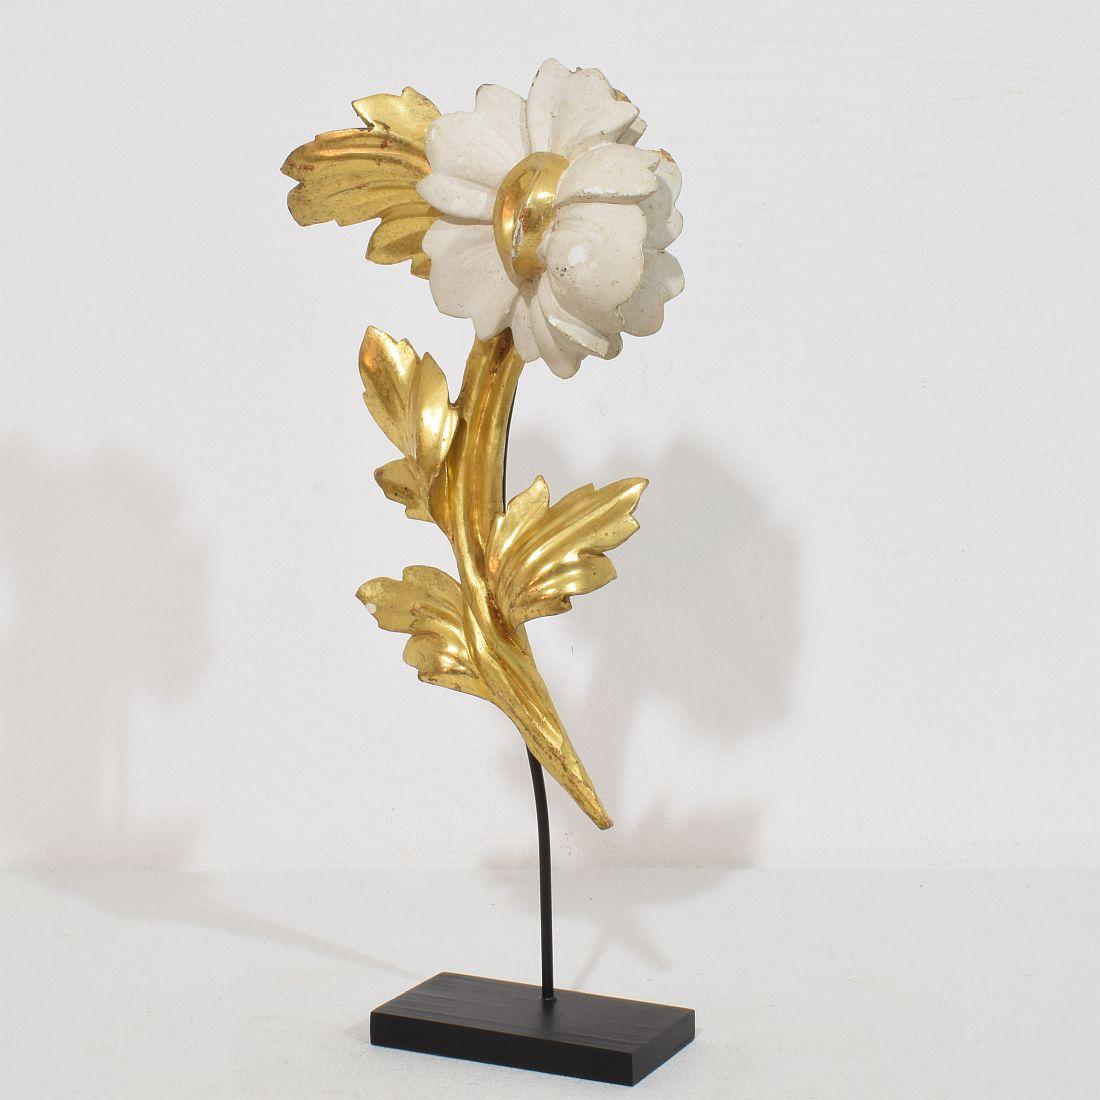 Wunderschönes handgeschnitztes Blumenornament aus Goldholz, das einst eine Kapelle schmückte, ein originales Stück aus der Zeit, das durch seine  hohes Alter hat  ein wunderbar verwittertes Aussehen.
Italien um 1780/1850 , verwittert
Die Abmessungen